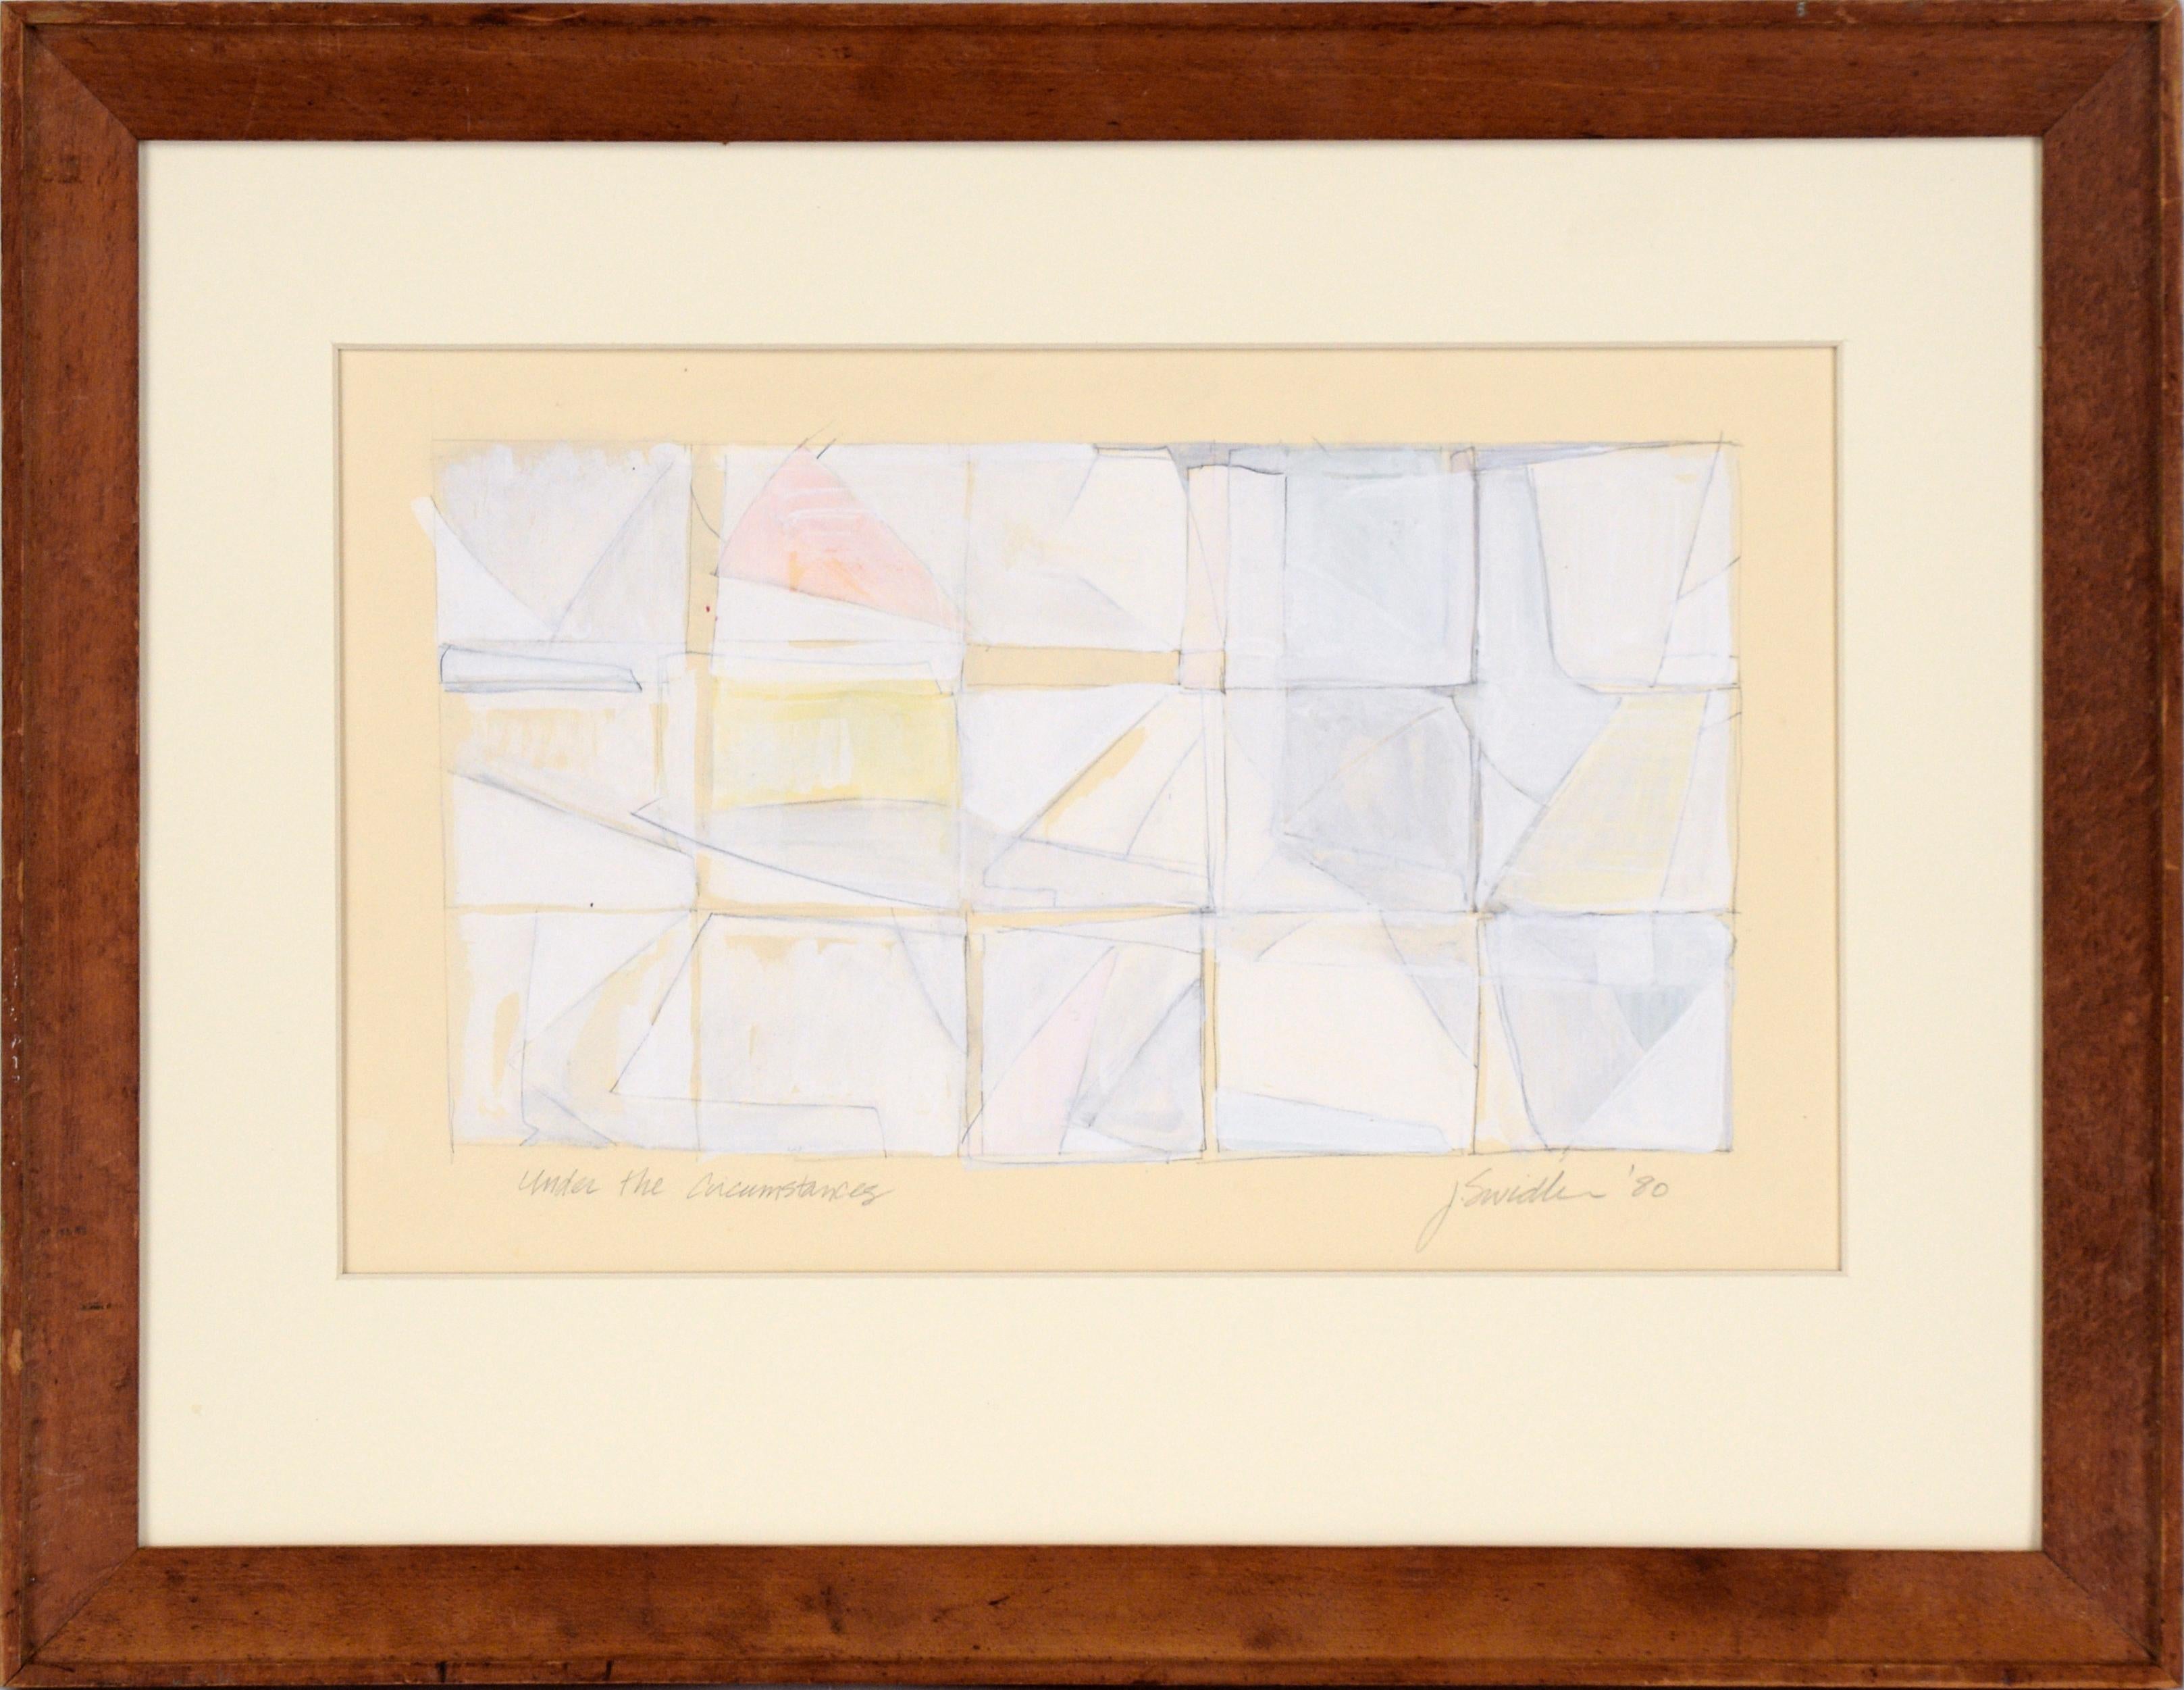 Abstract Painting J. Swidler - « Under the Circumstances » - Composition géométrique abstraite à la gouache sur papier